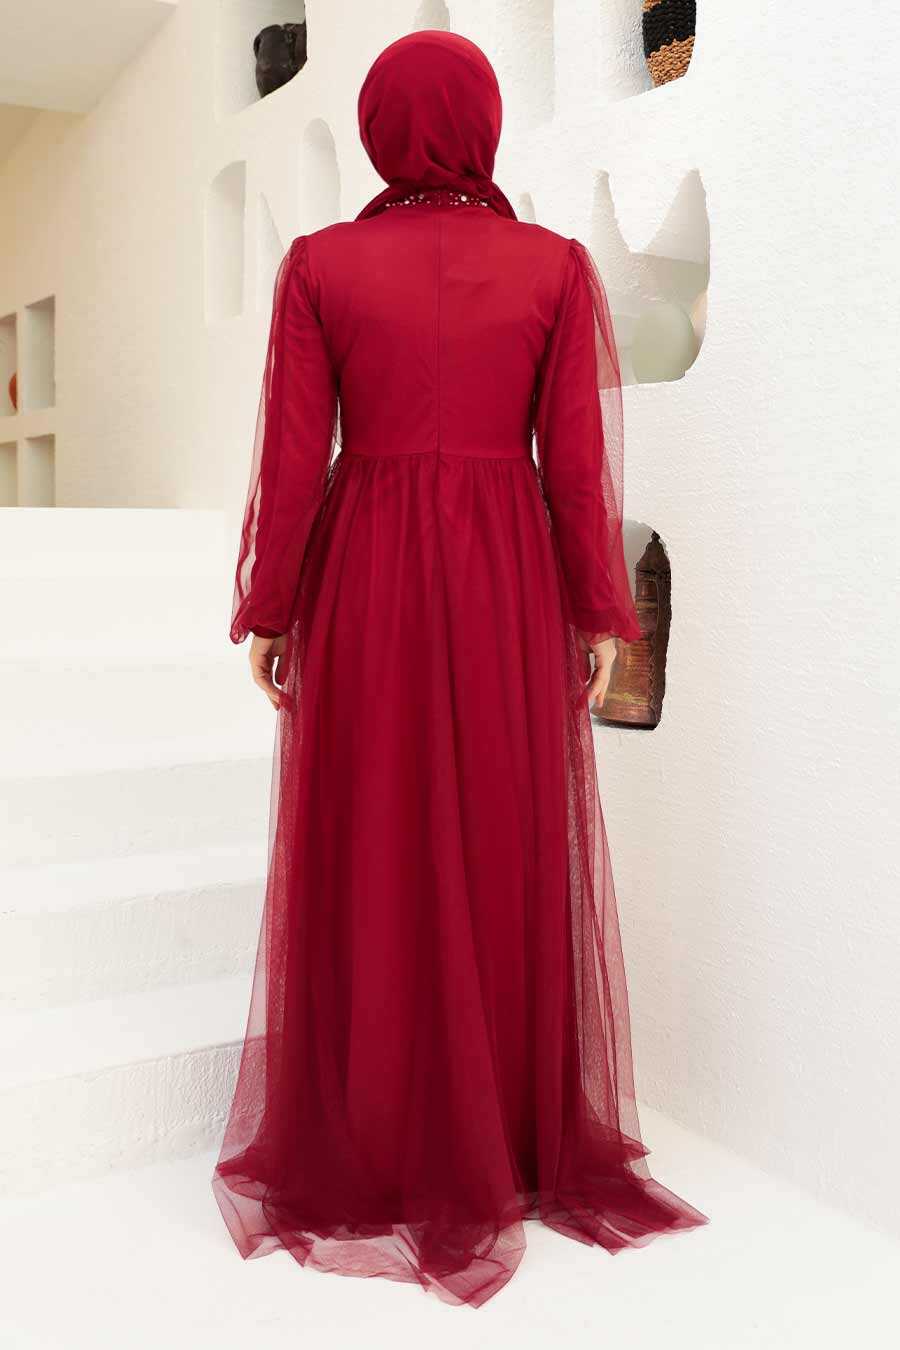 Neva Style - Plus Size Claret Red Islamic Clothing Engagement Dress 9170BR